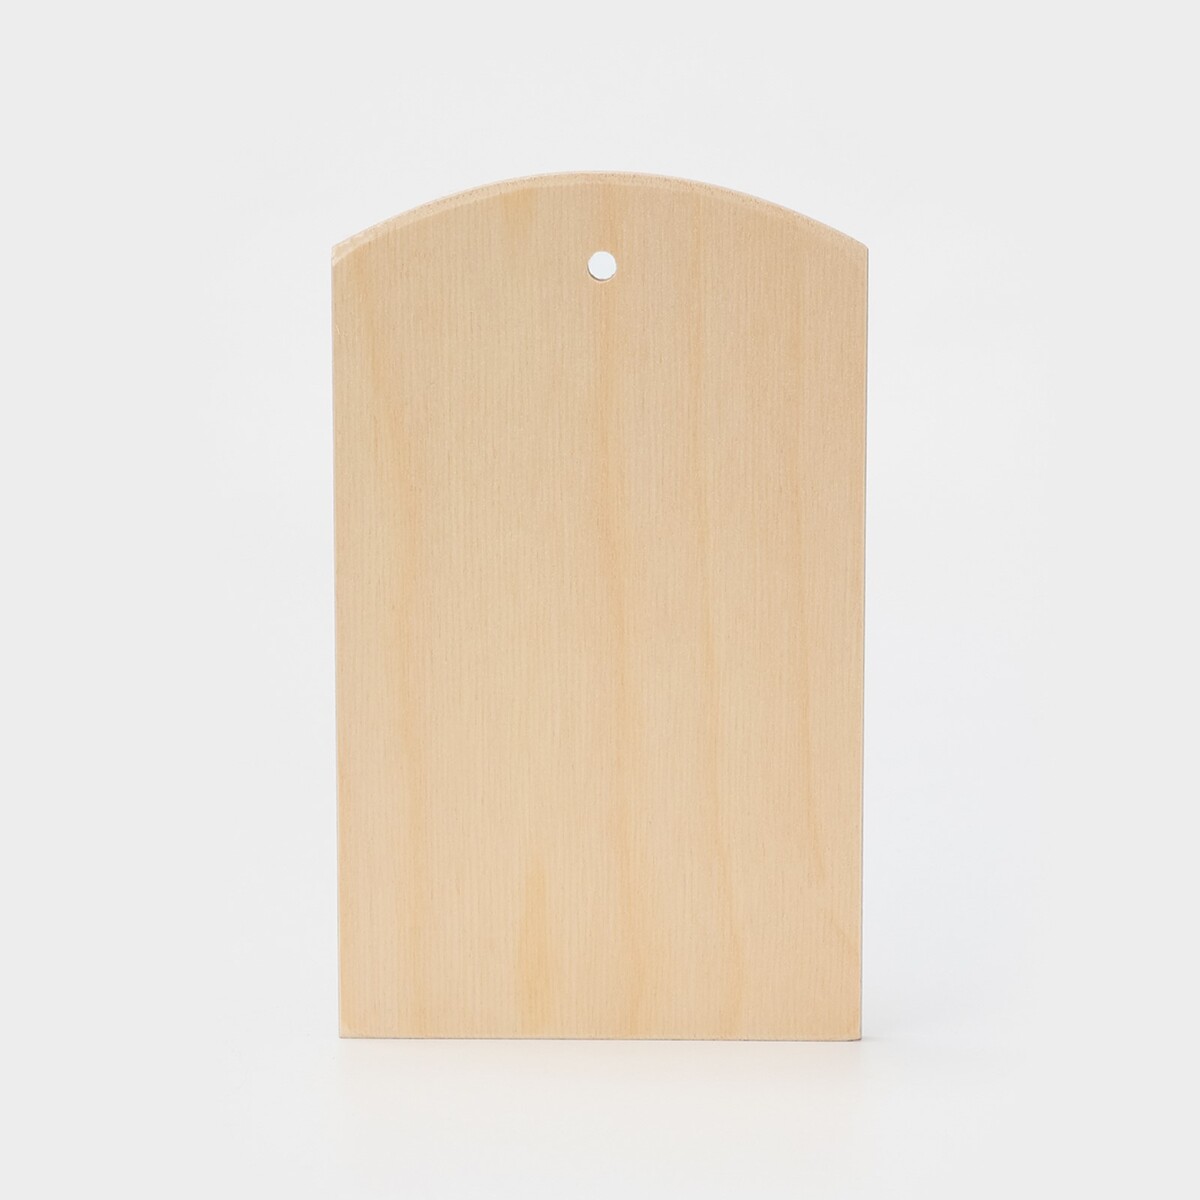 Доска разделочная деревянная с отверстием доляна, 21×12,5 см, фанера